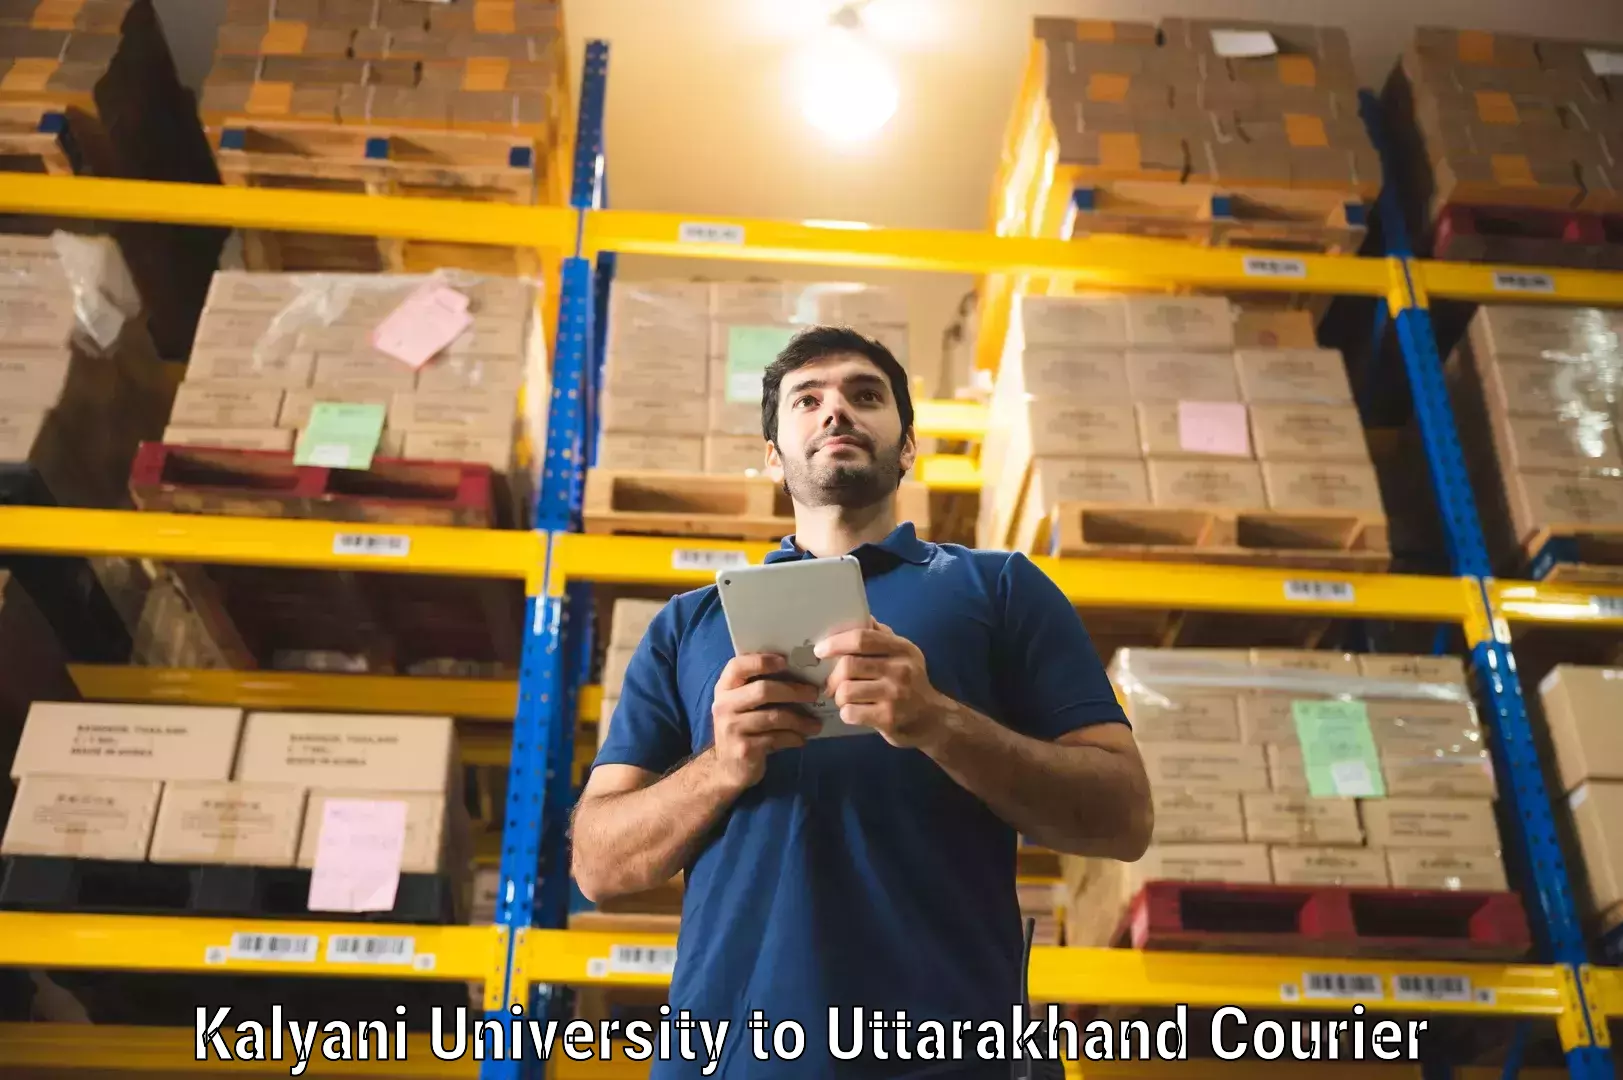 Package forwarding in Kalyani University to Gopeshwar